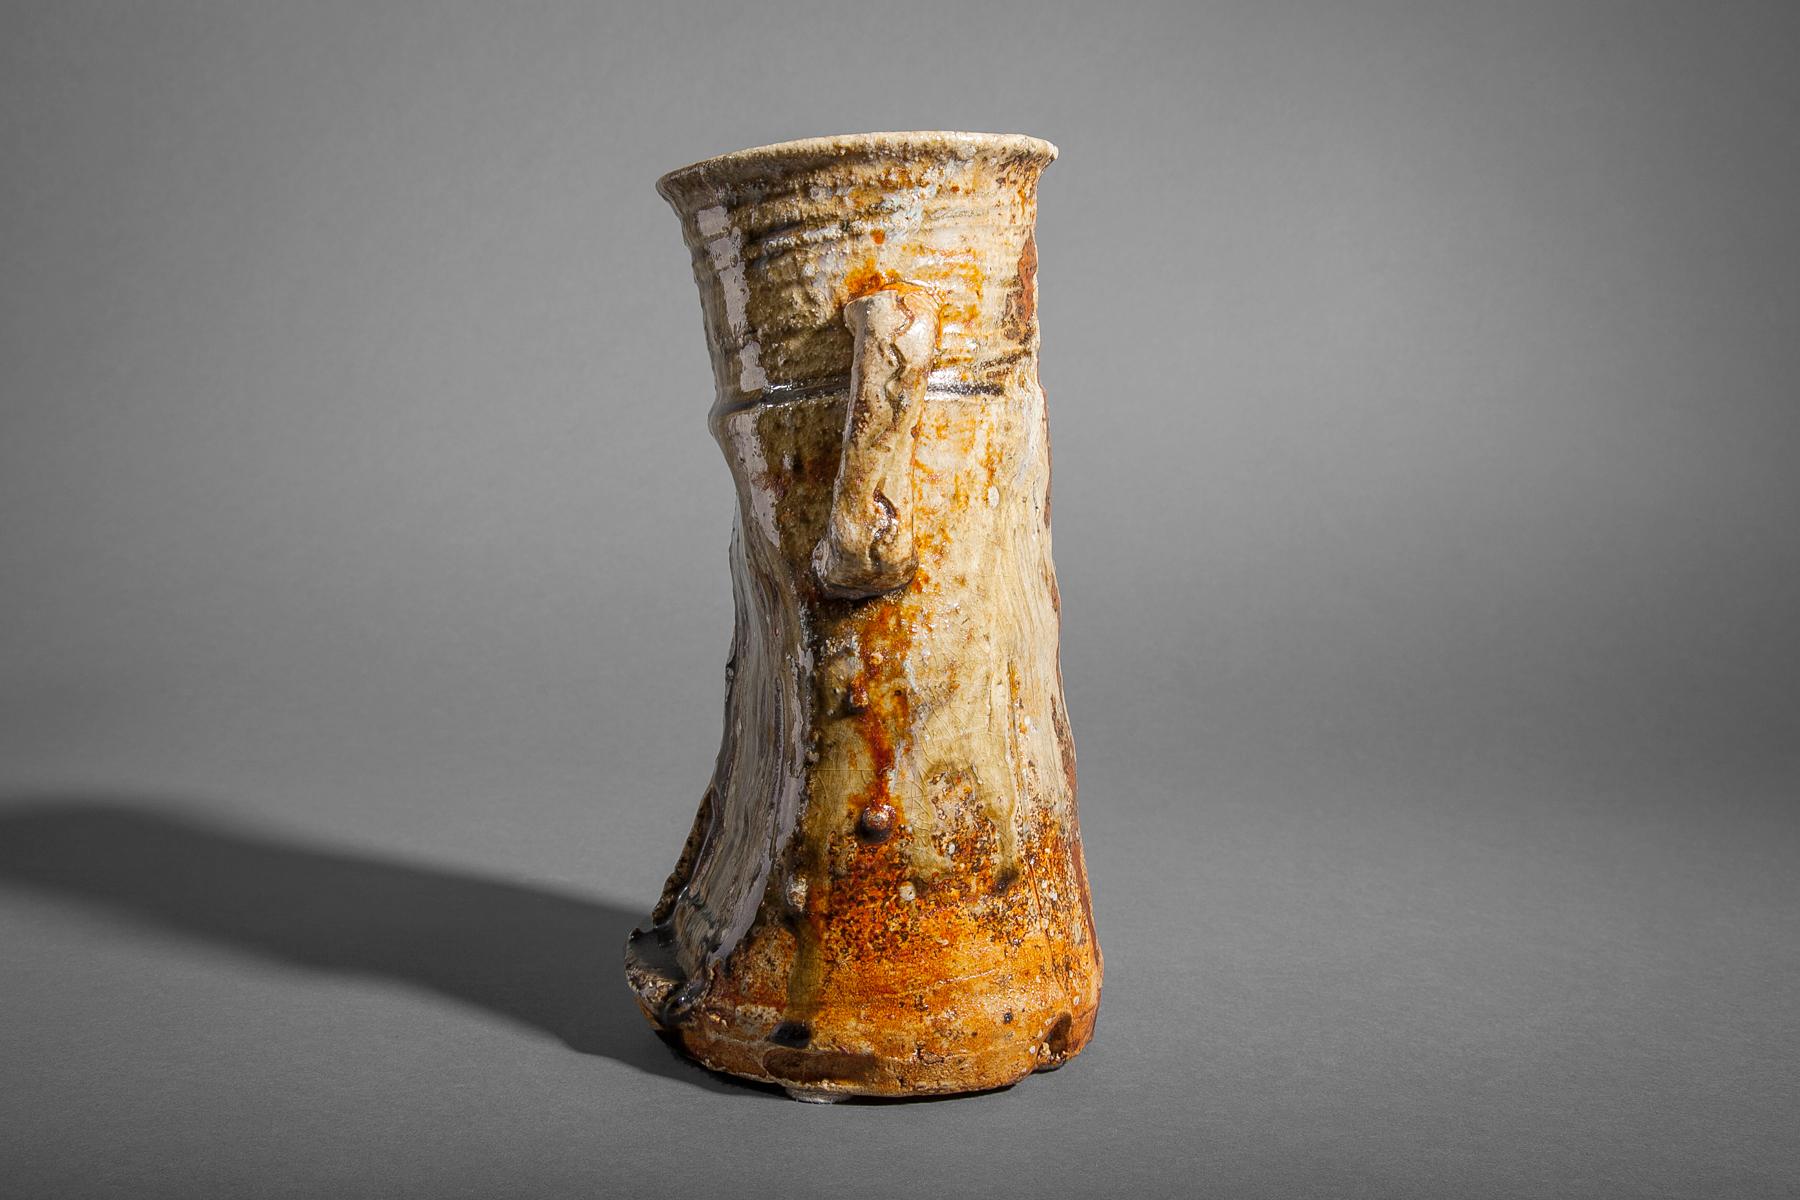 Vase de la période Meiji (1868-1912) aux oreilles caractéristiques de l'Iga-ware et à l'argile rugueuse et sableuse. Livré dans sa boîte de rangement d'origine avec une veste en soie et un cordon de serrage.